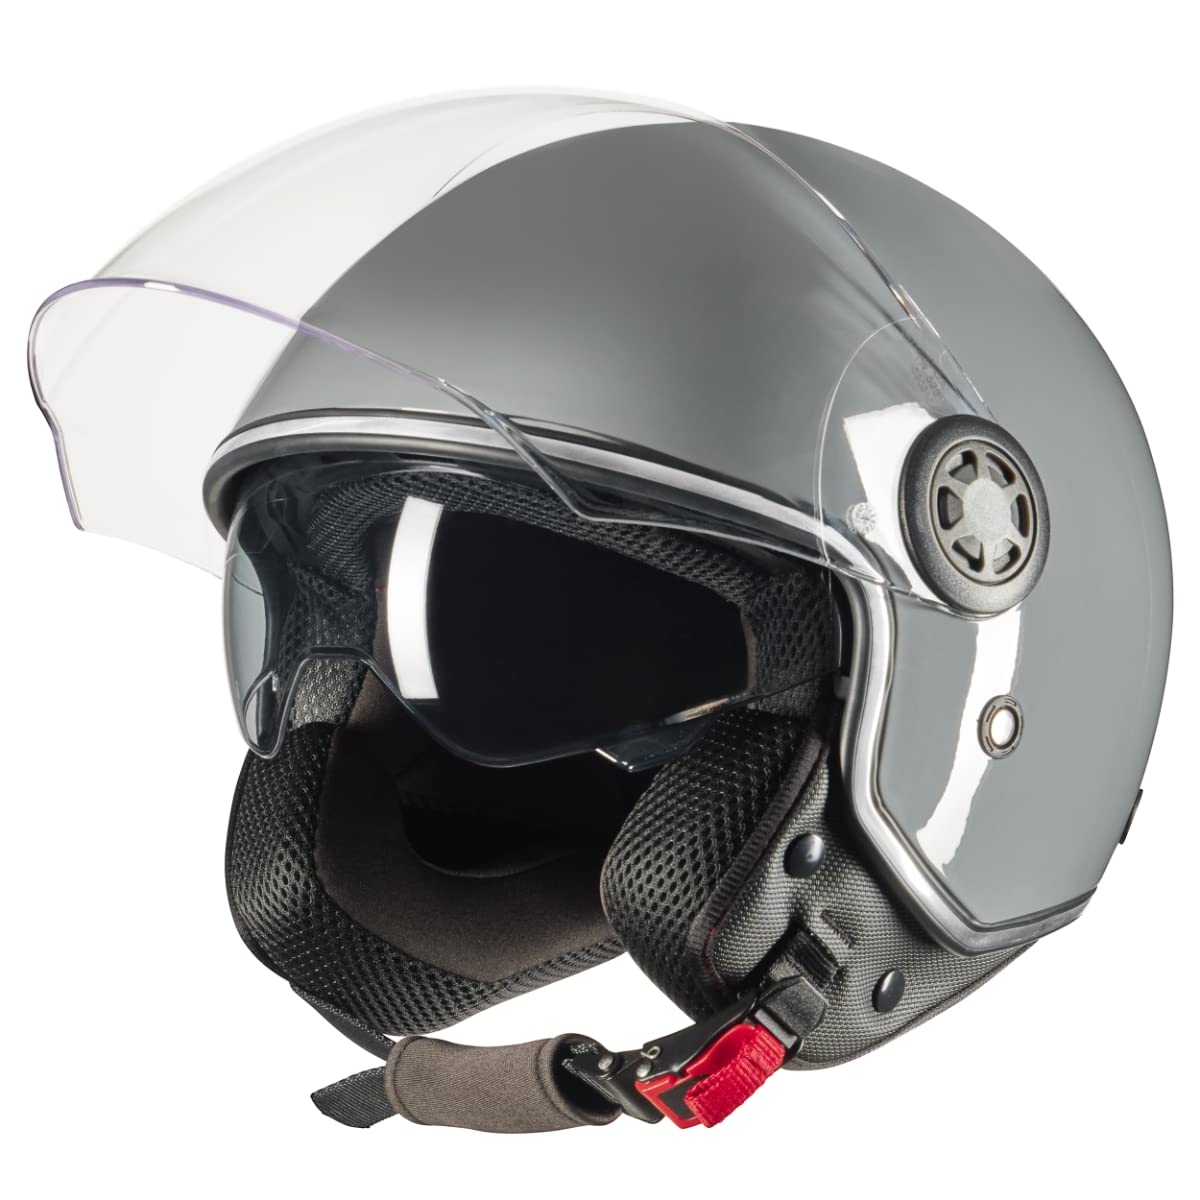 VINZ Pavia Jethelm mit Doppelvisier | Roller Helm Fashionhelm | In Gr. XS-XXL | Jet Helm mit Sonnenblende | ECE 22.06 Zertifiziert | Motorradhelm mit Visier - Grau